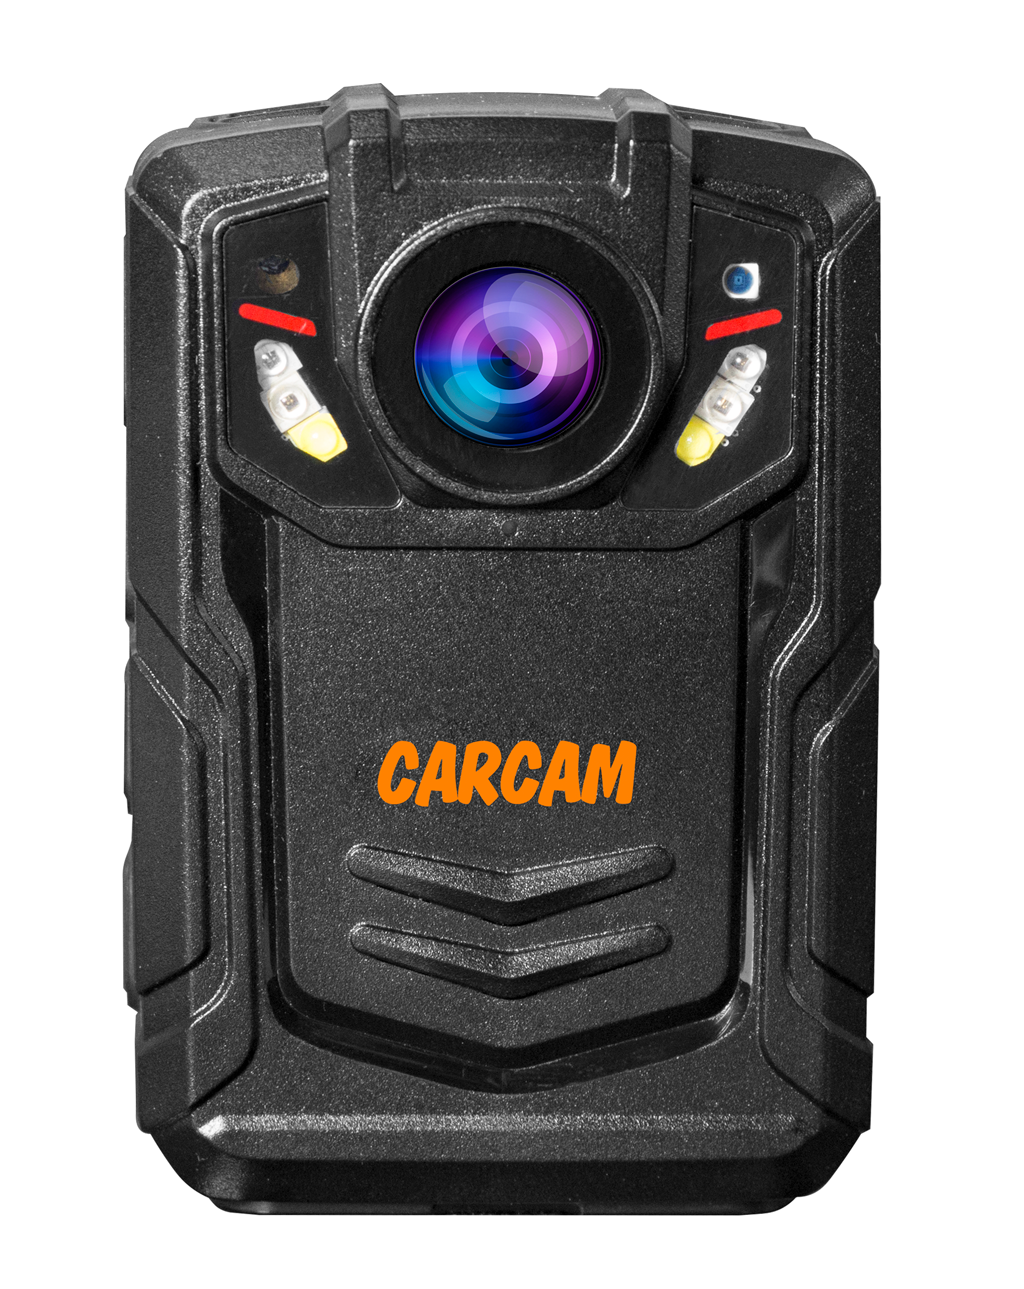 Персональный Quad HD видеорегистратор  CARCAM COMBAT 2S/4G 32GB персональный видеорегистратор carcam combat 2s pro 256gb